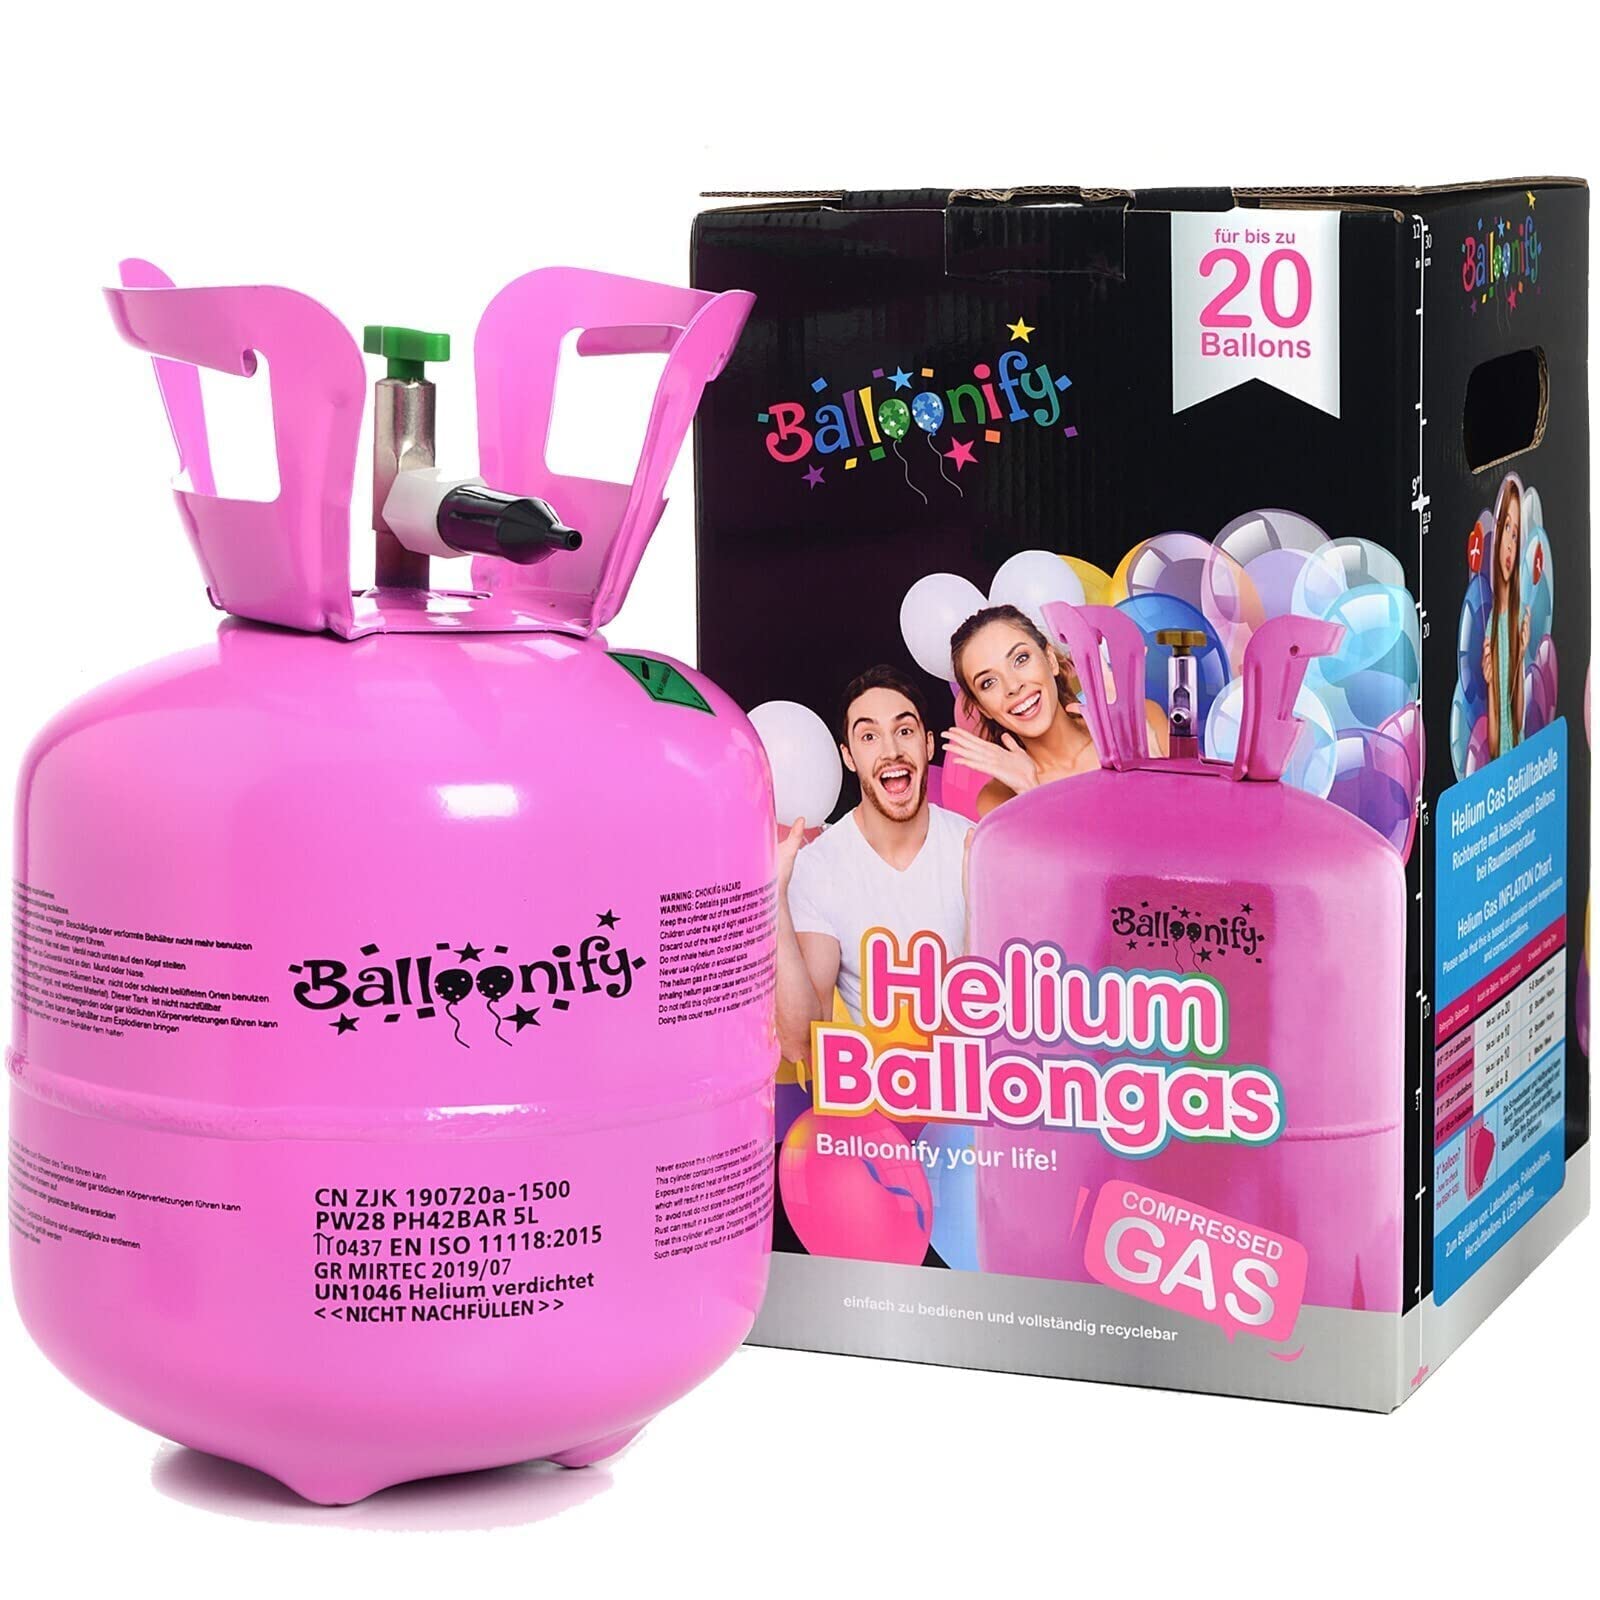 Helium Ballongas für 20/30/50 Ballons | Heliumflasche Set mit Knickventil für Luftballons + Folienballons | Geburtstag Party Hochzeit Flasche, Größe: Ballongas für 20 Ballons